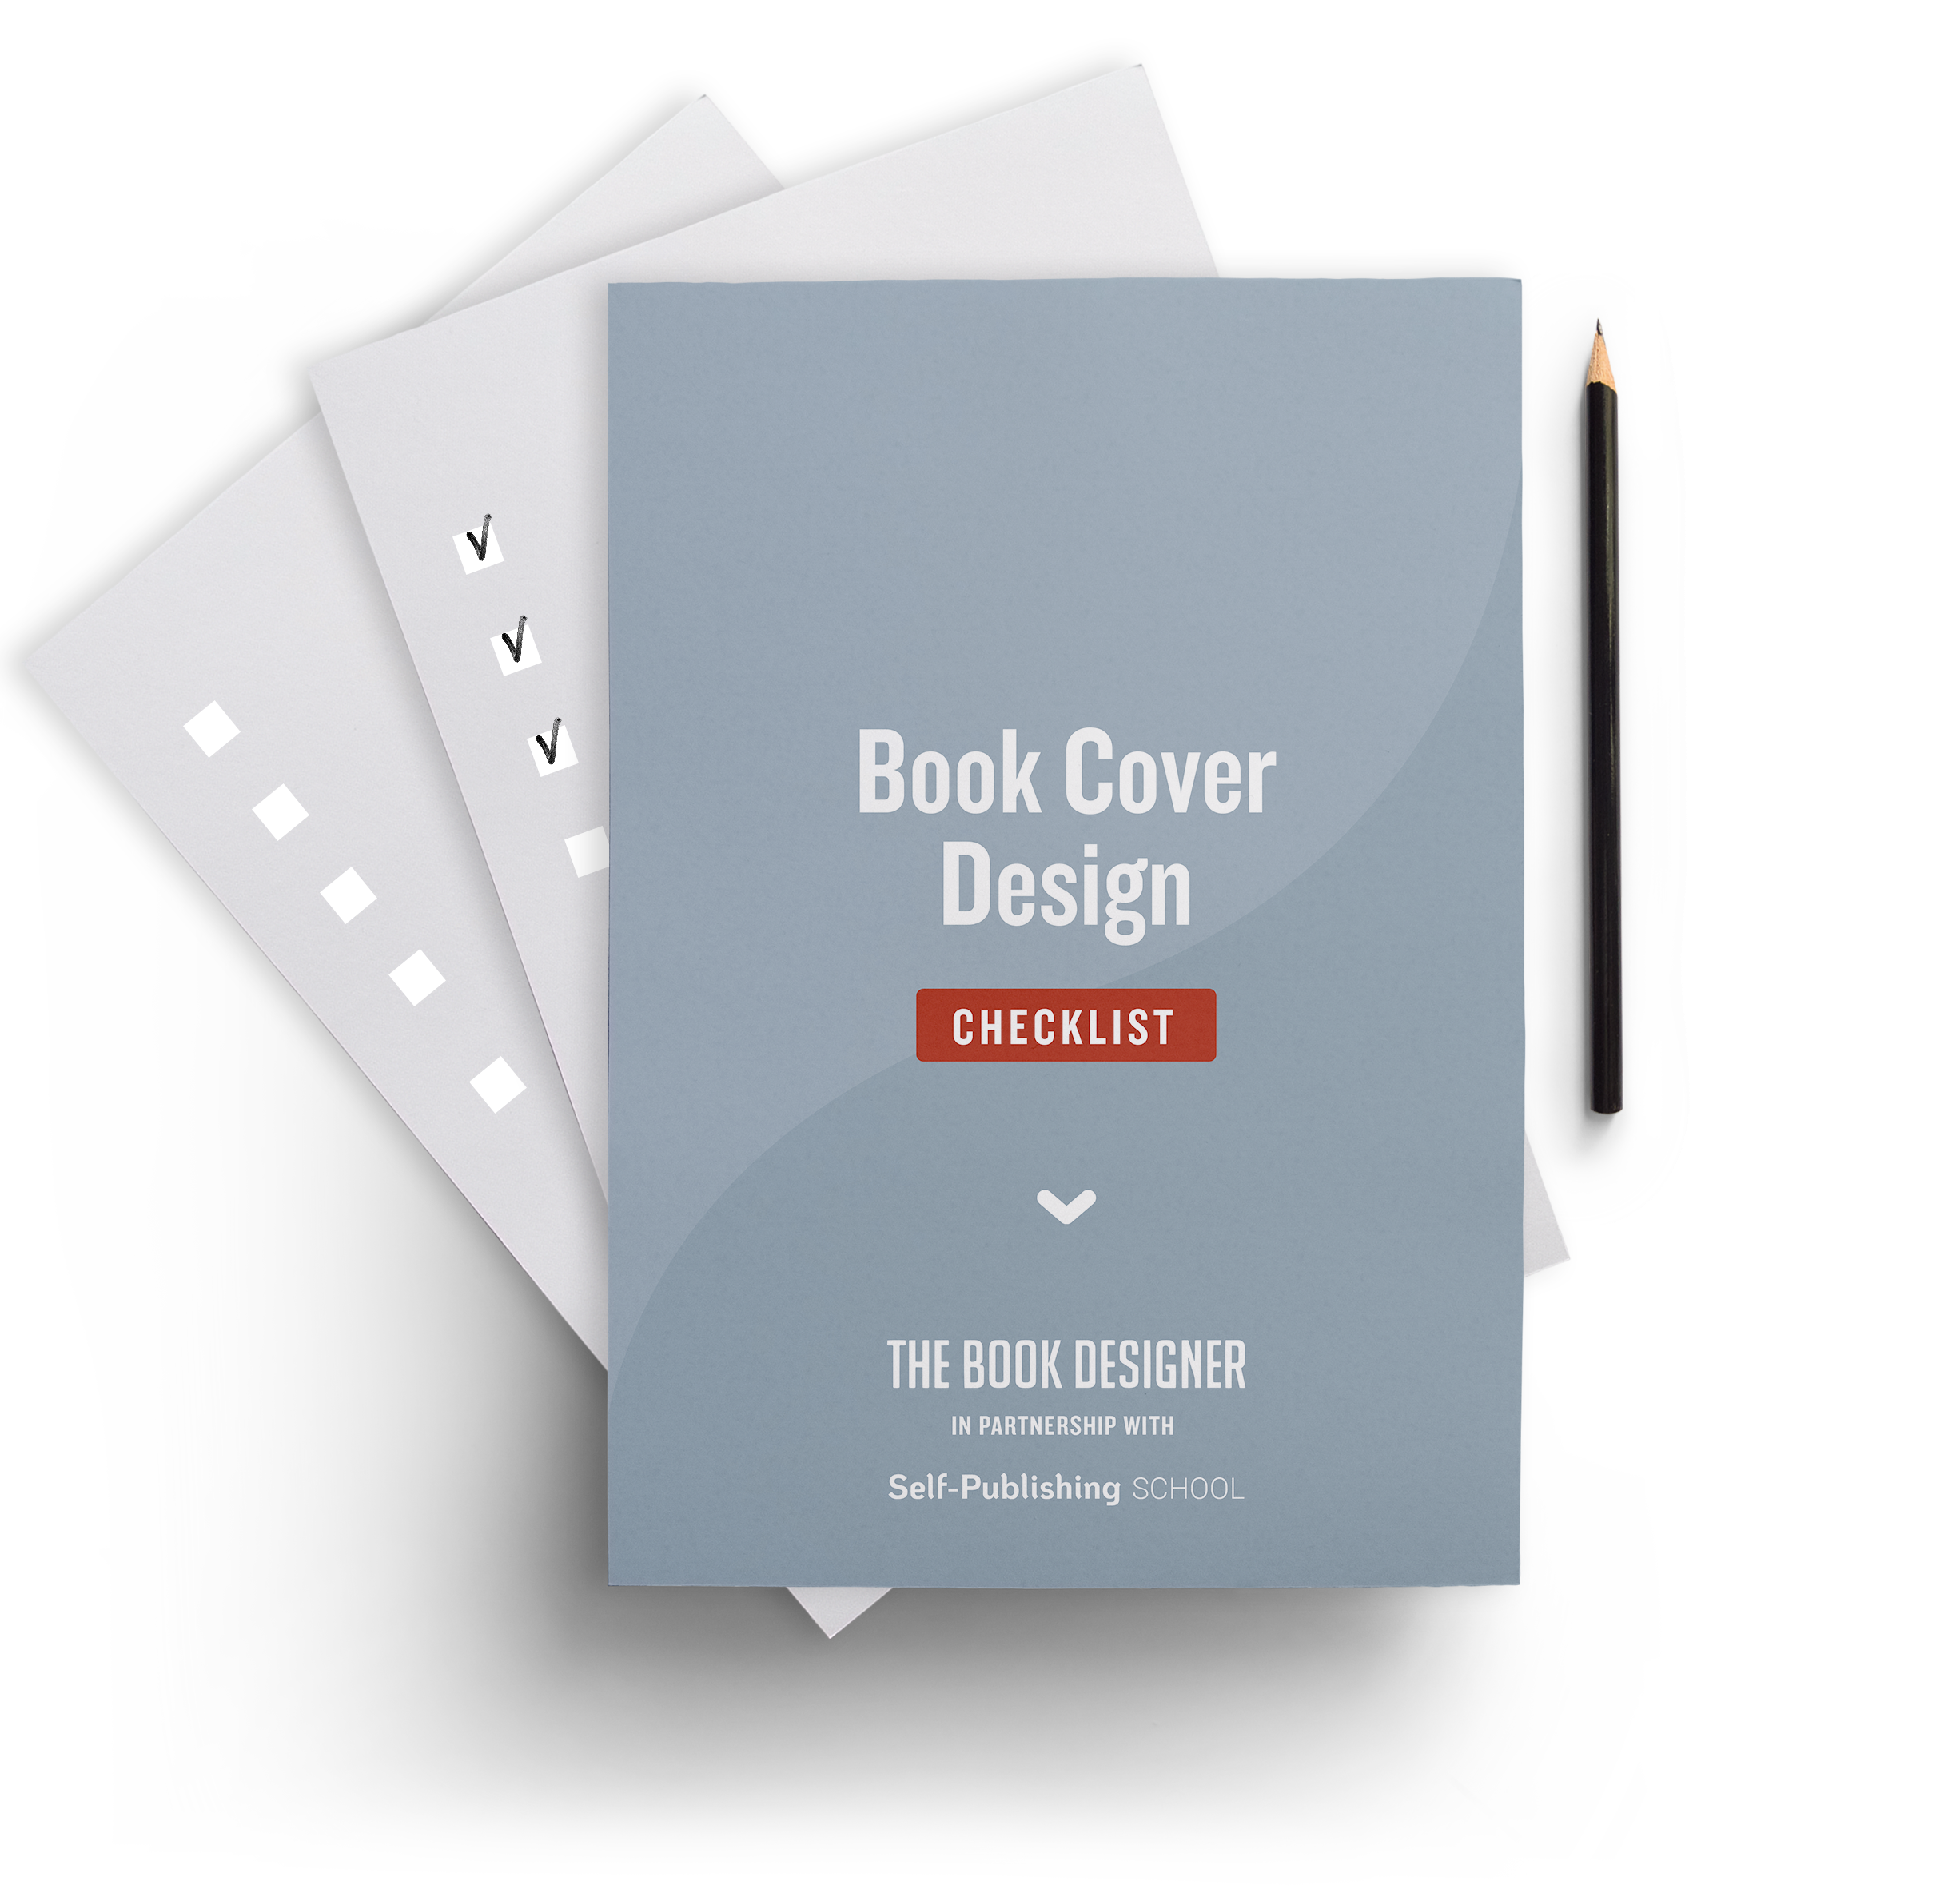 tbd-book-cover-checklist (2)